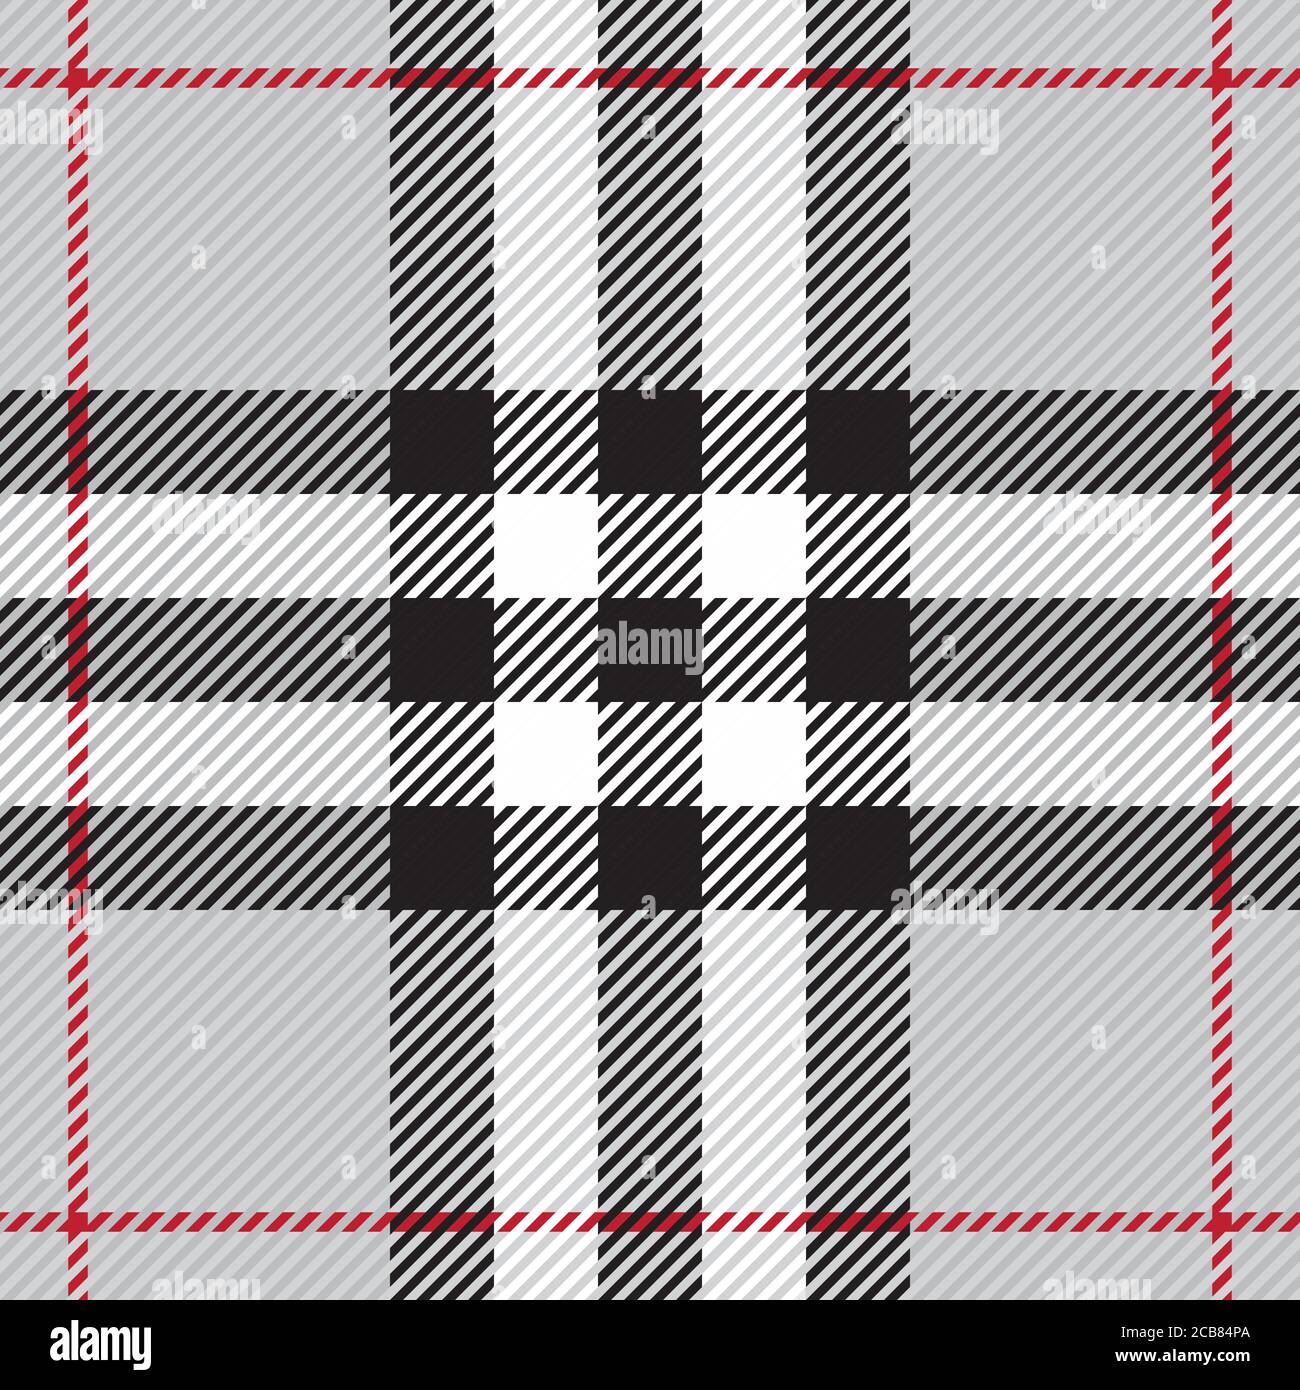 Motivo scozzese vintage senza cuciture. Tradizionale ornamento scozzese in plaid a scacchi. Illustrazione vettoriale a strisce con intersezione geometrica colorata. Illustrazione Vettoriale